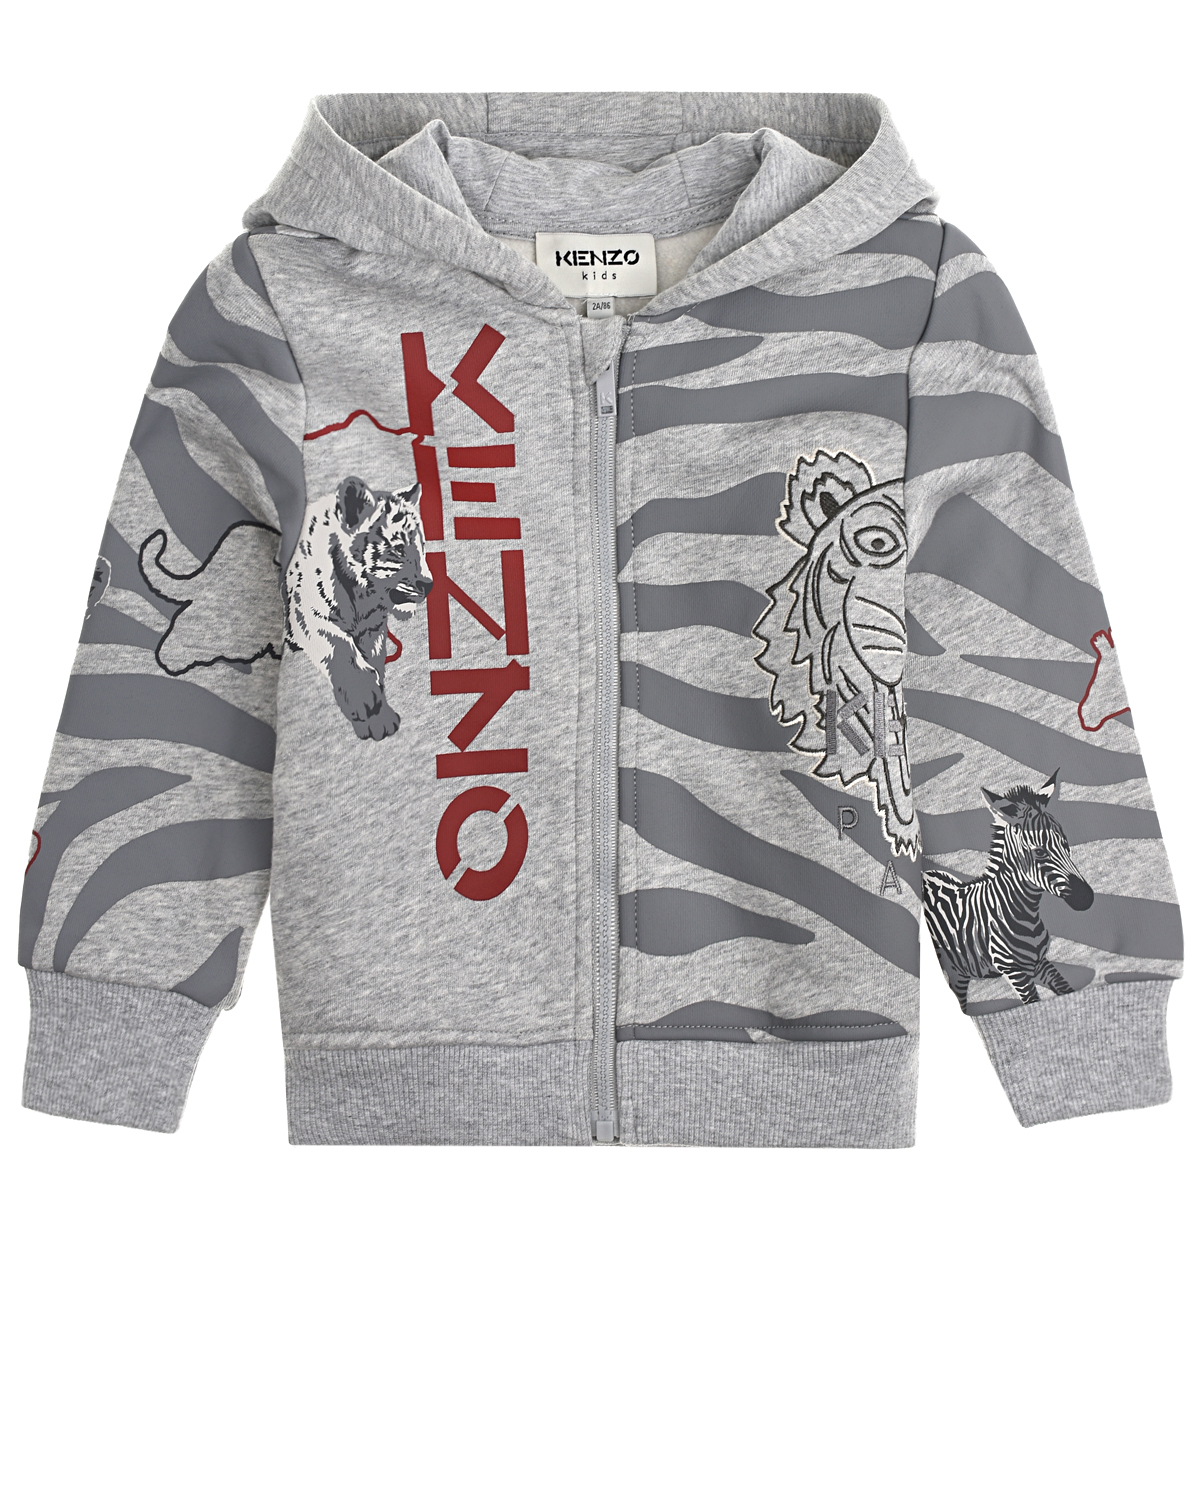 Спортивная куртка с анималистичным принтом KENZO детская, размер 86, цвет серый - фото 1